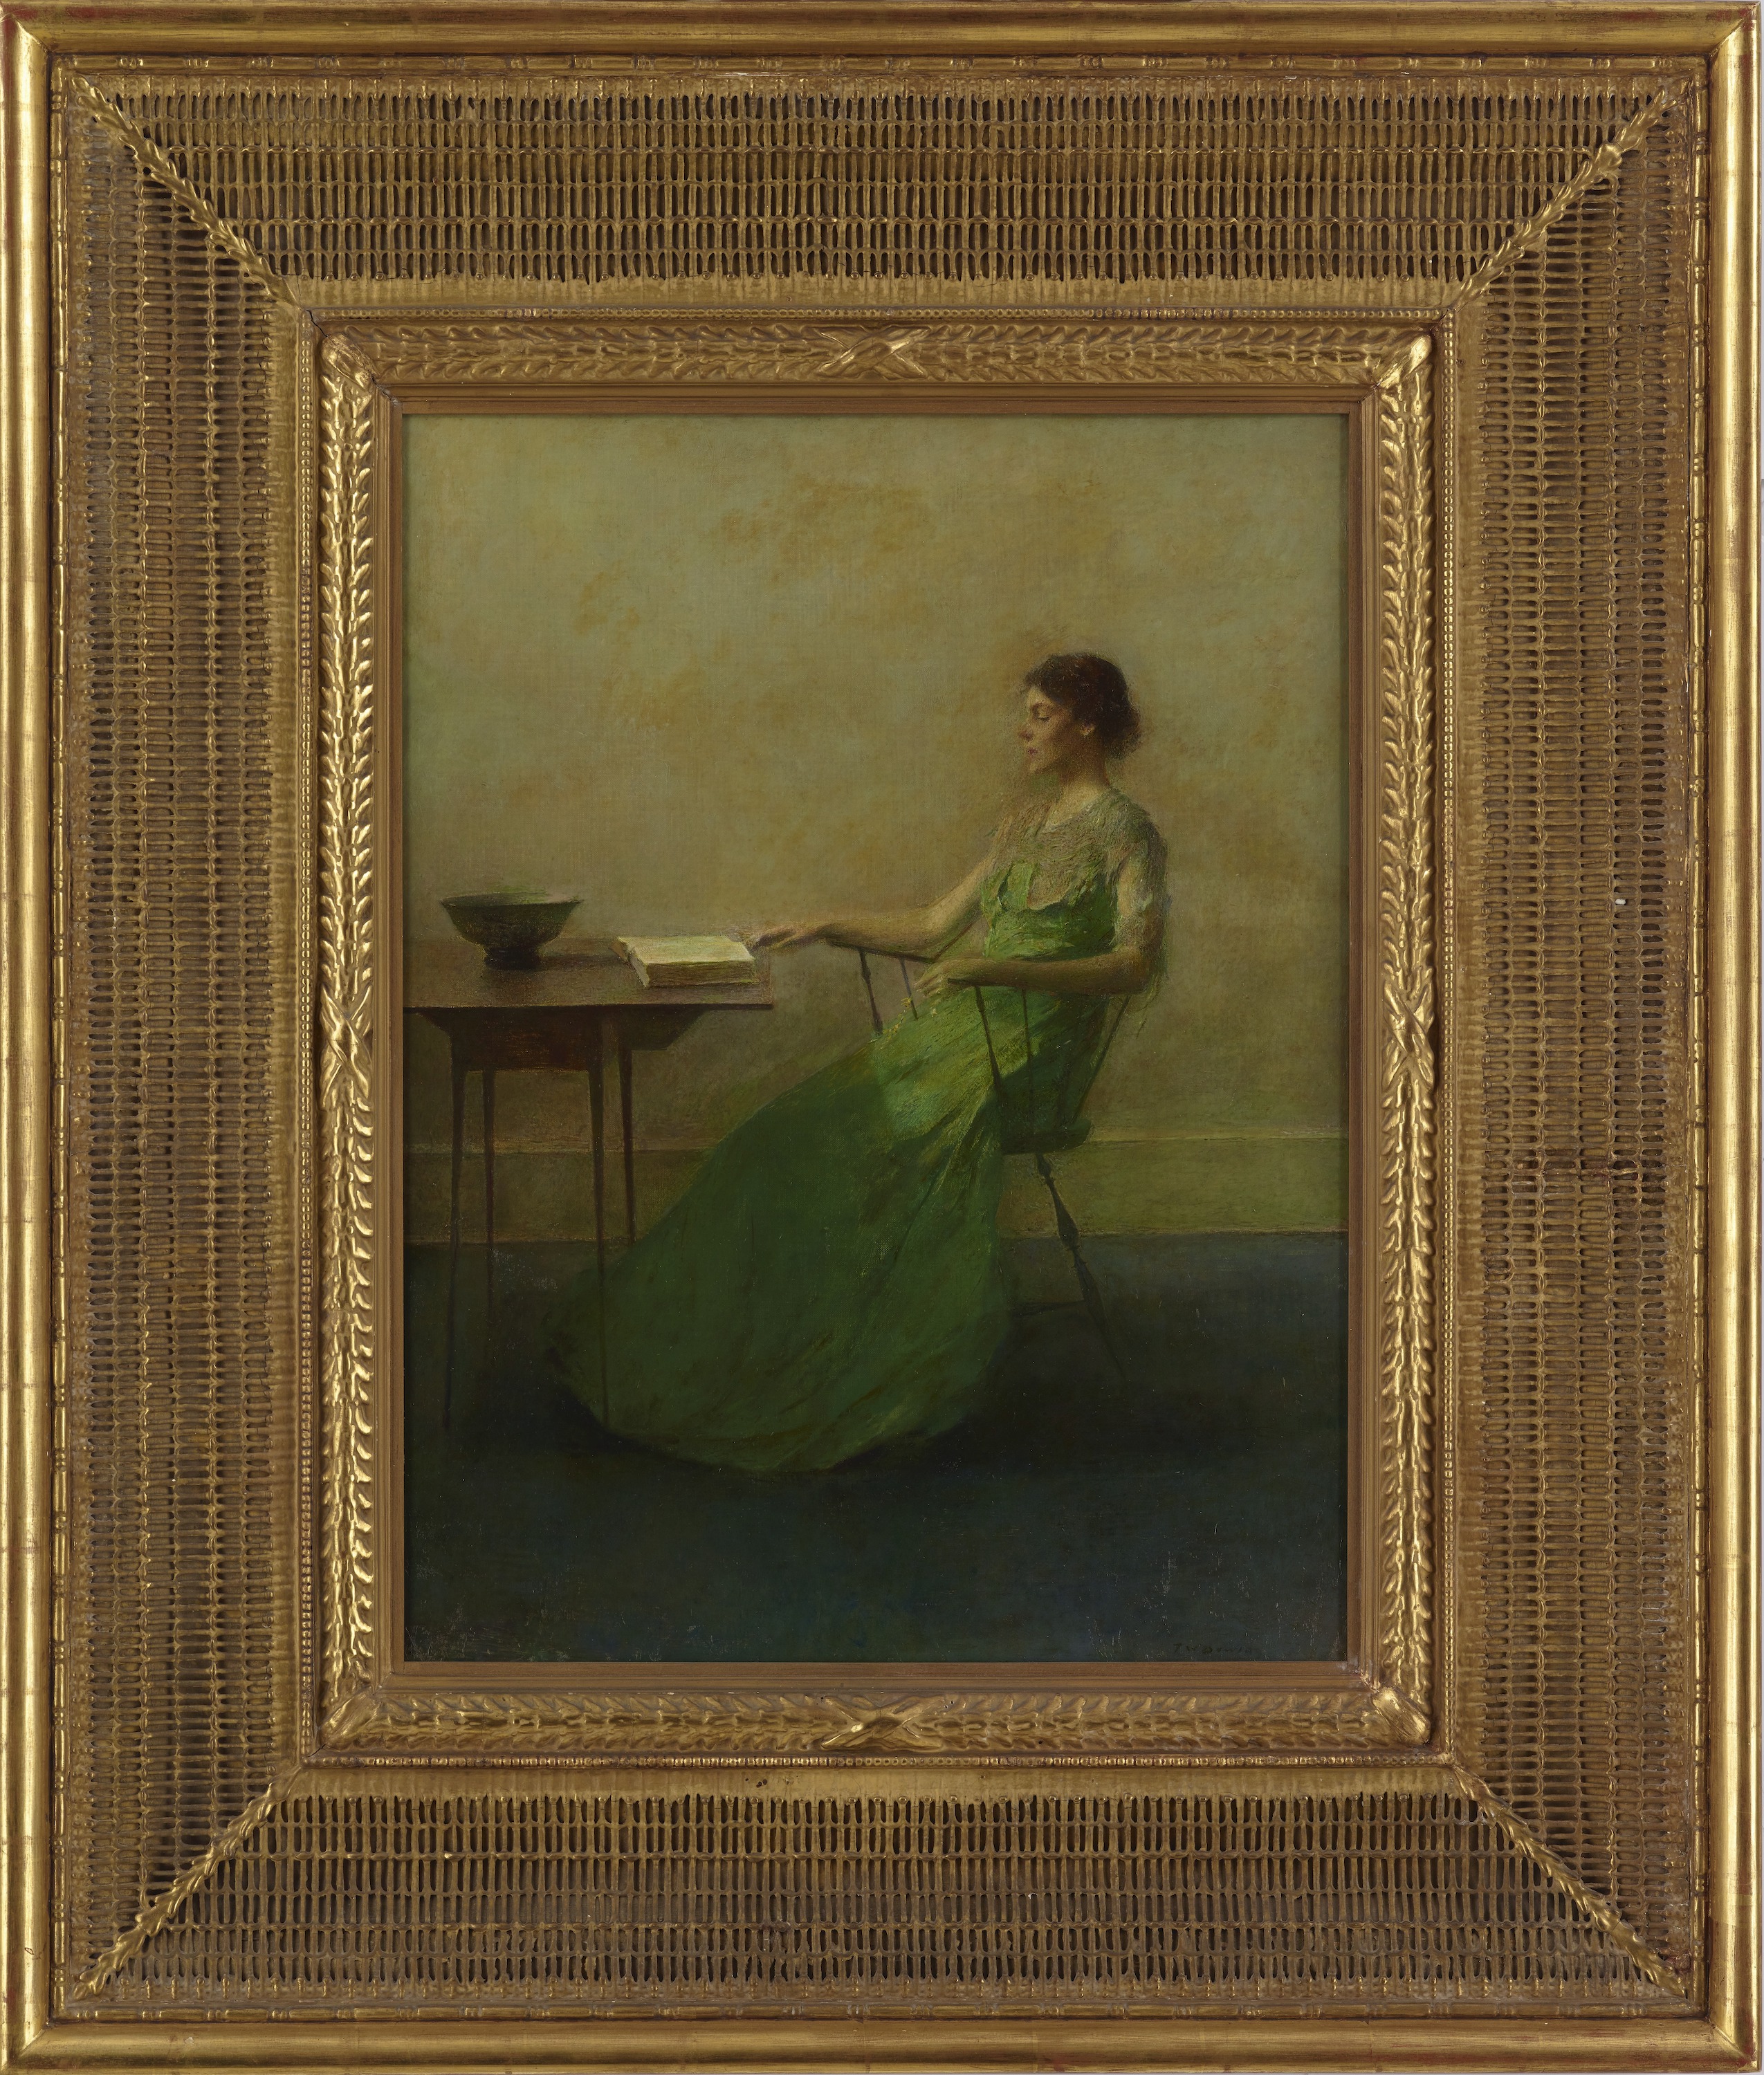 화관 (The Garland) by Thomas Wilmer Dewing - 1916 경 - 63.7 x 48.4 cm 